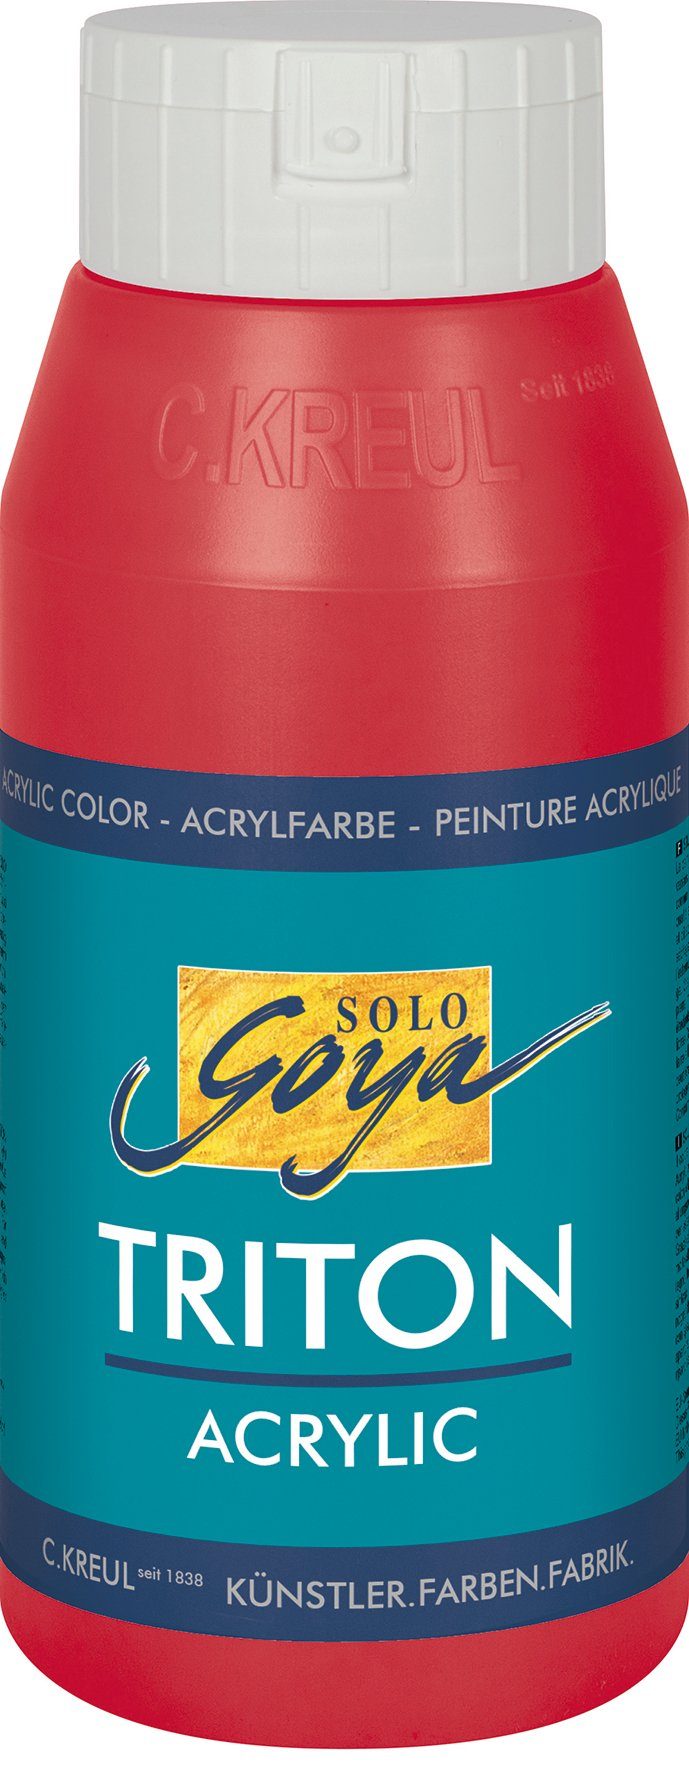 Kreul Weinrot Acrylic, 750 Goya Acrylfarbe Solo ml Triton